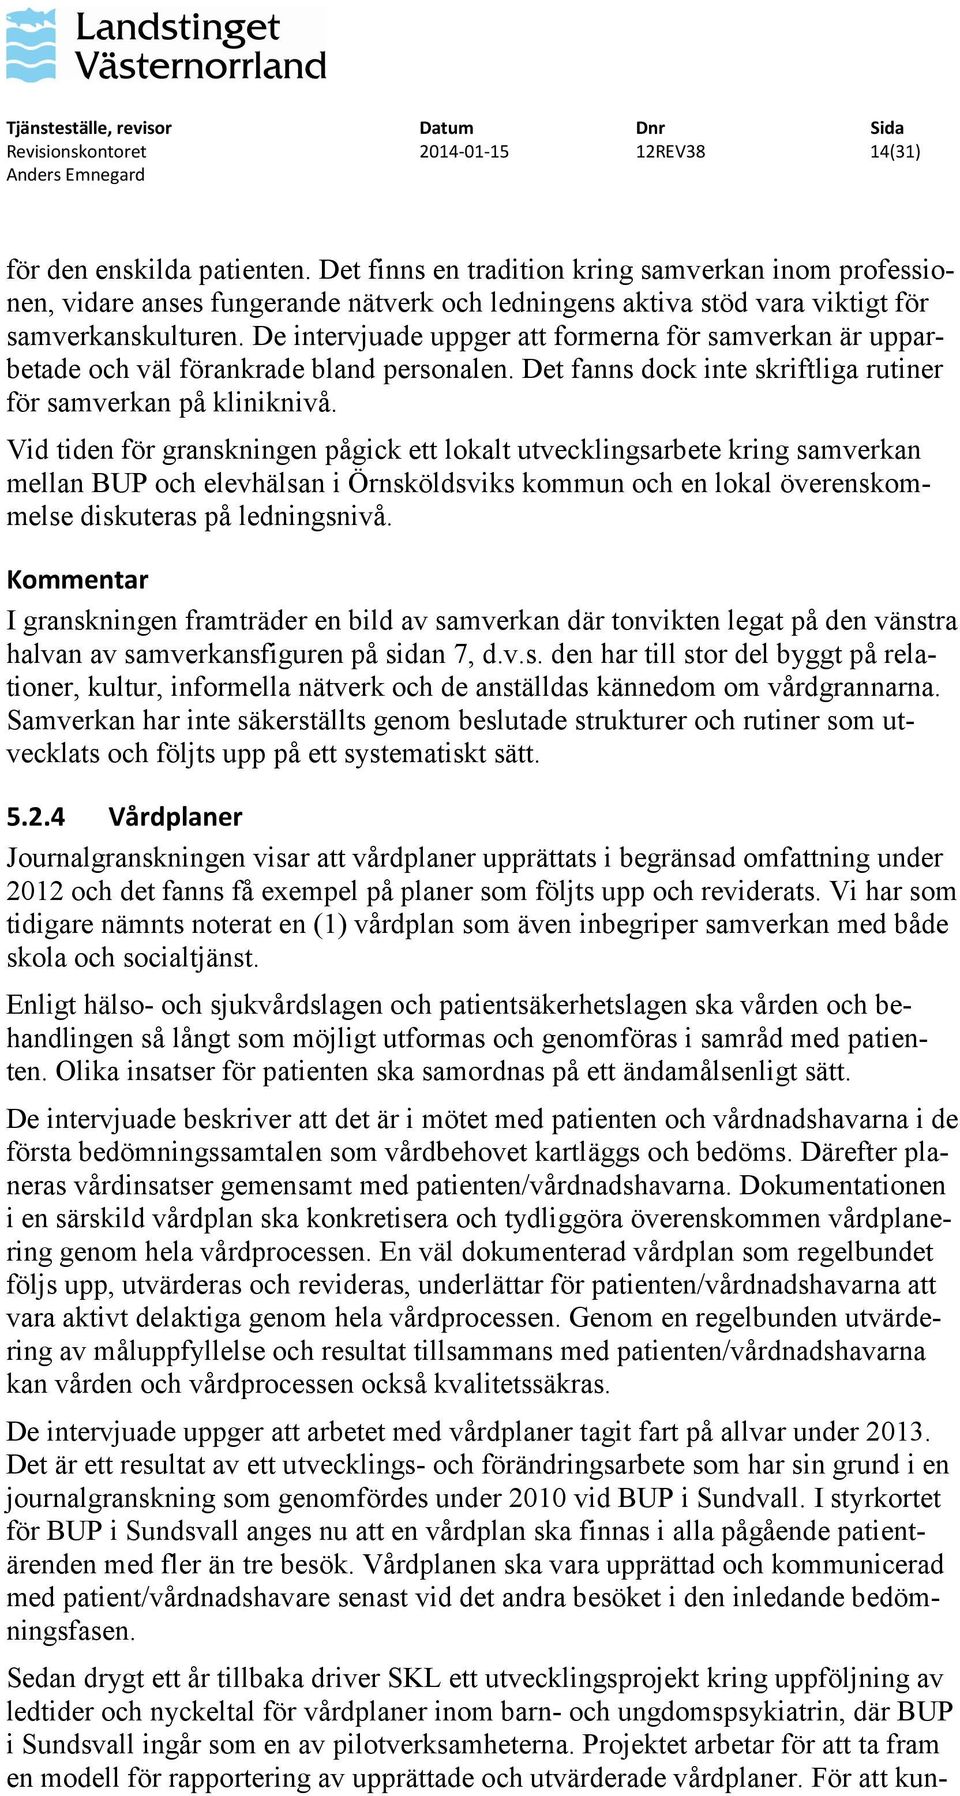 Vid tiden för granskningen pågick ett lokalt utvecklingsarbete kring samverkan mellan BUP och elevhälsan i Örnsköldsviks kommun och en lokal överenskommelse diskuteras på ledningsnivå.